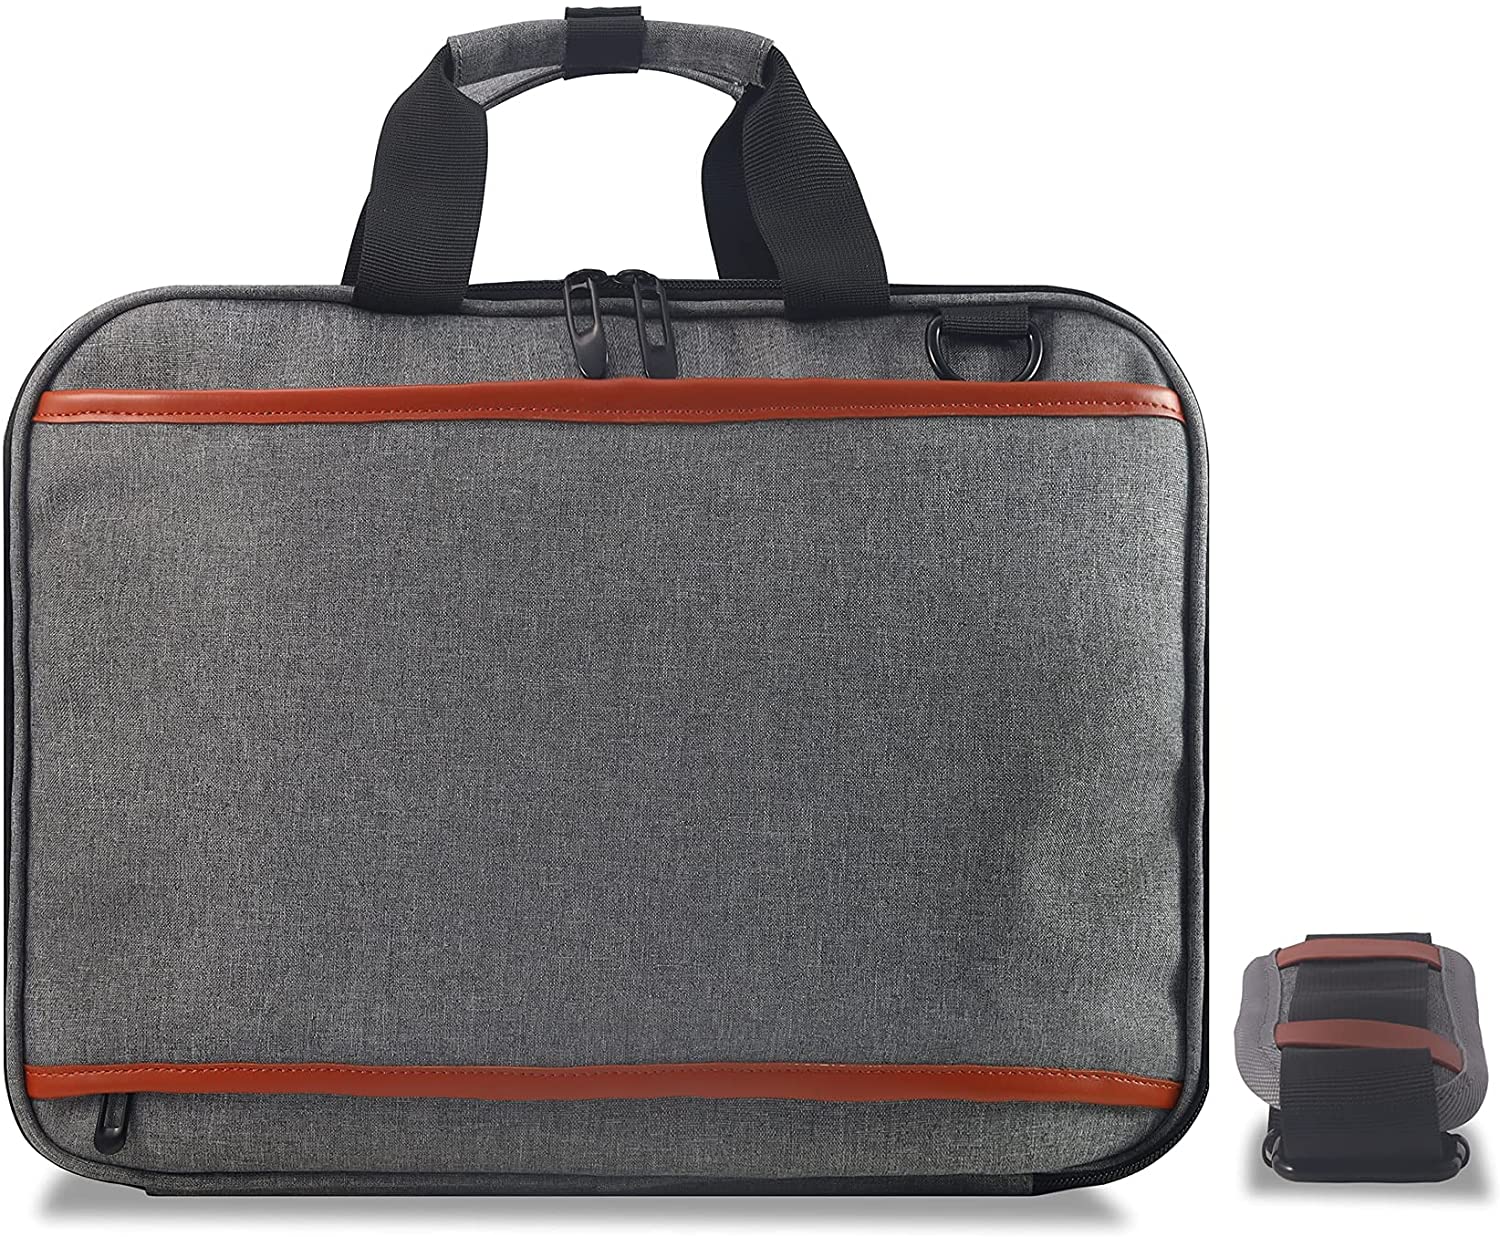 Laptop Bag Shoulder Crossbody Bag for 15-16 inches Large Laptop